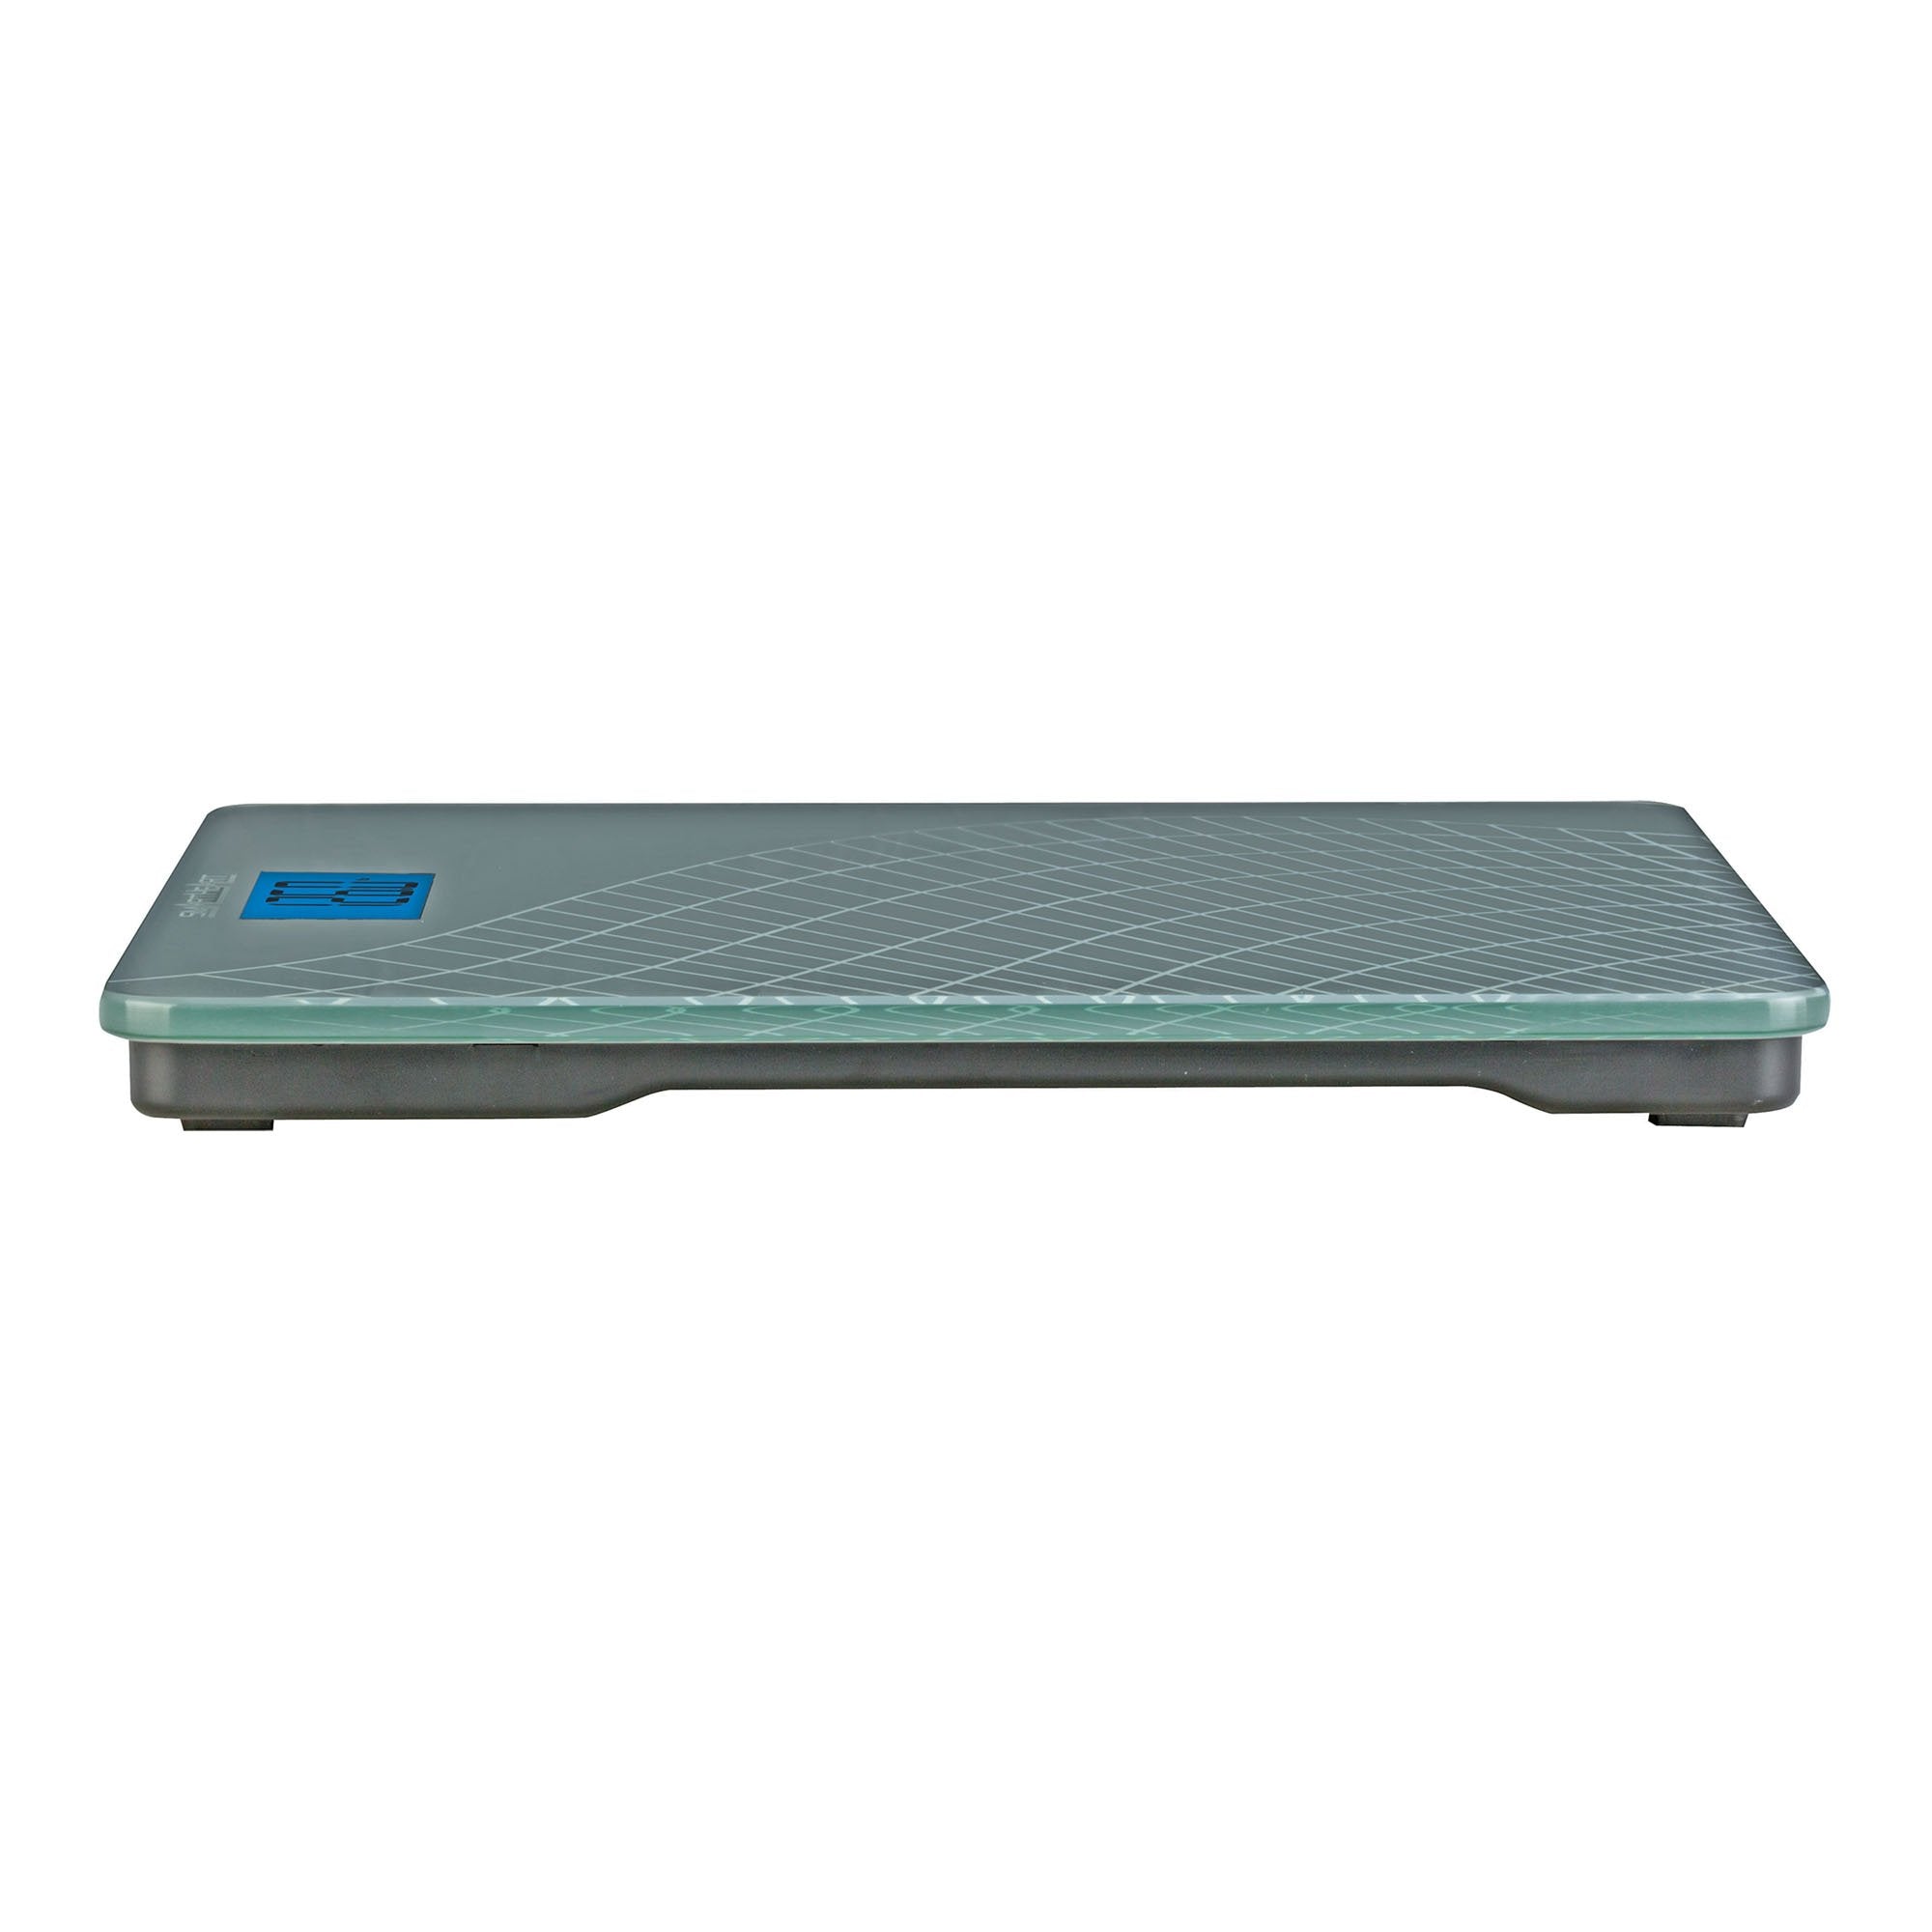 Floor Scale Veridian Digital Display 438 lbs / 199 kg Gray Battery Operated